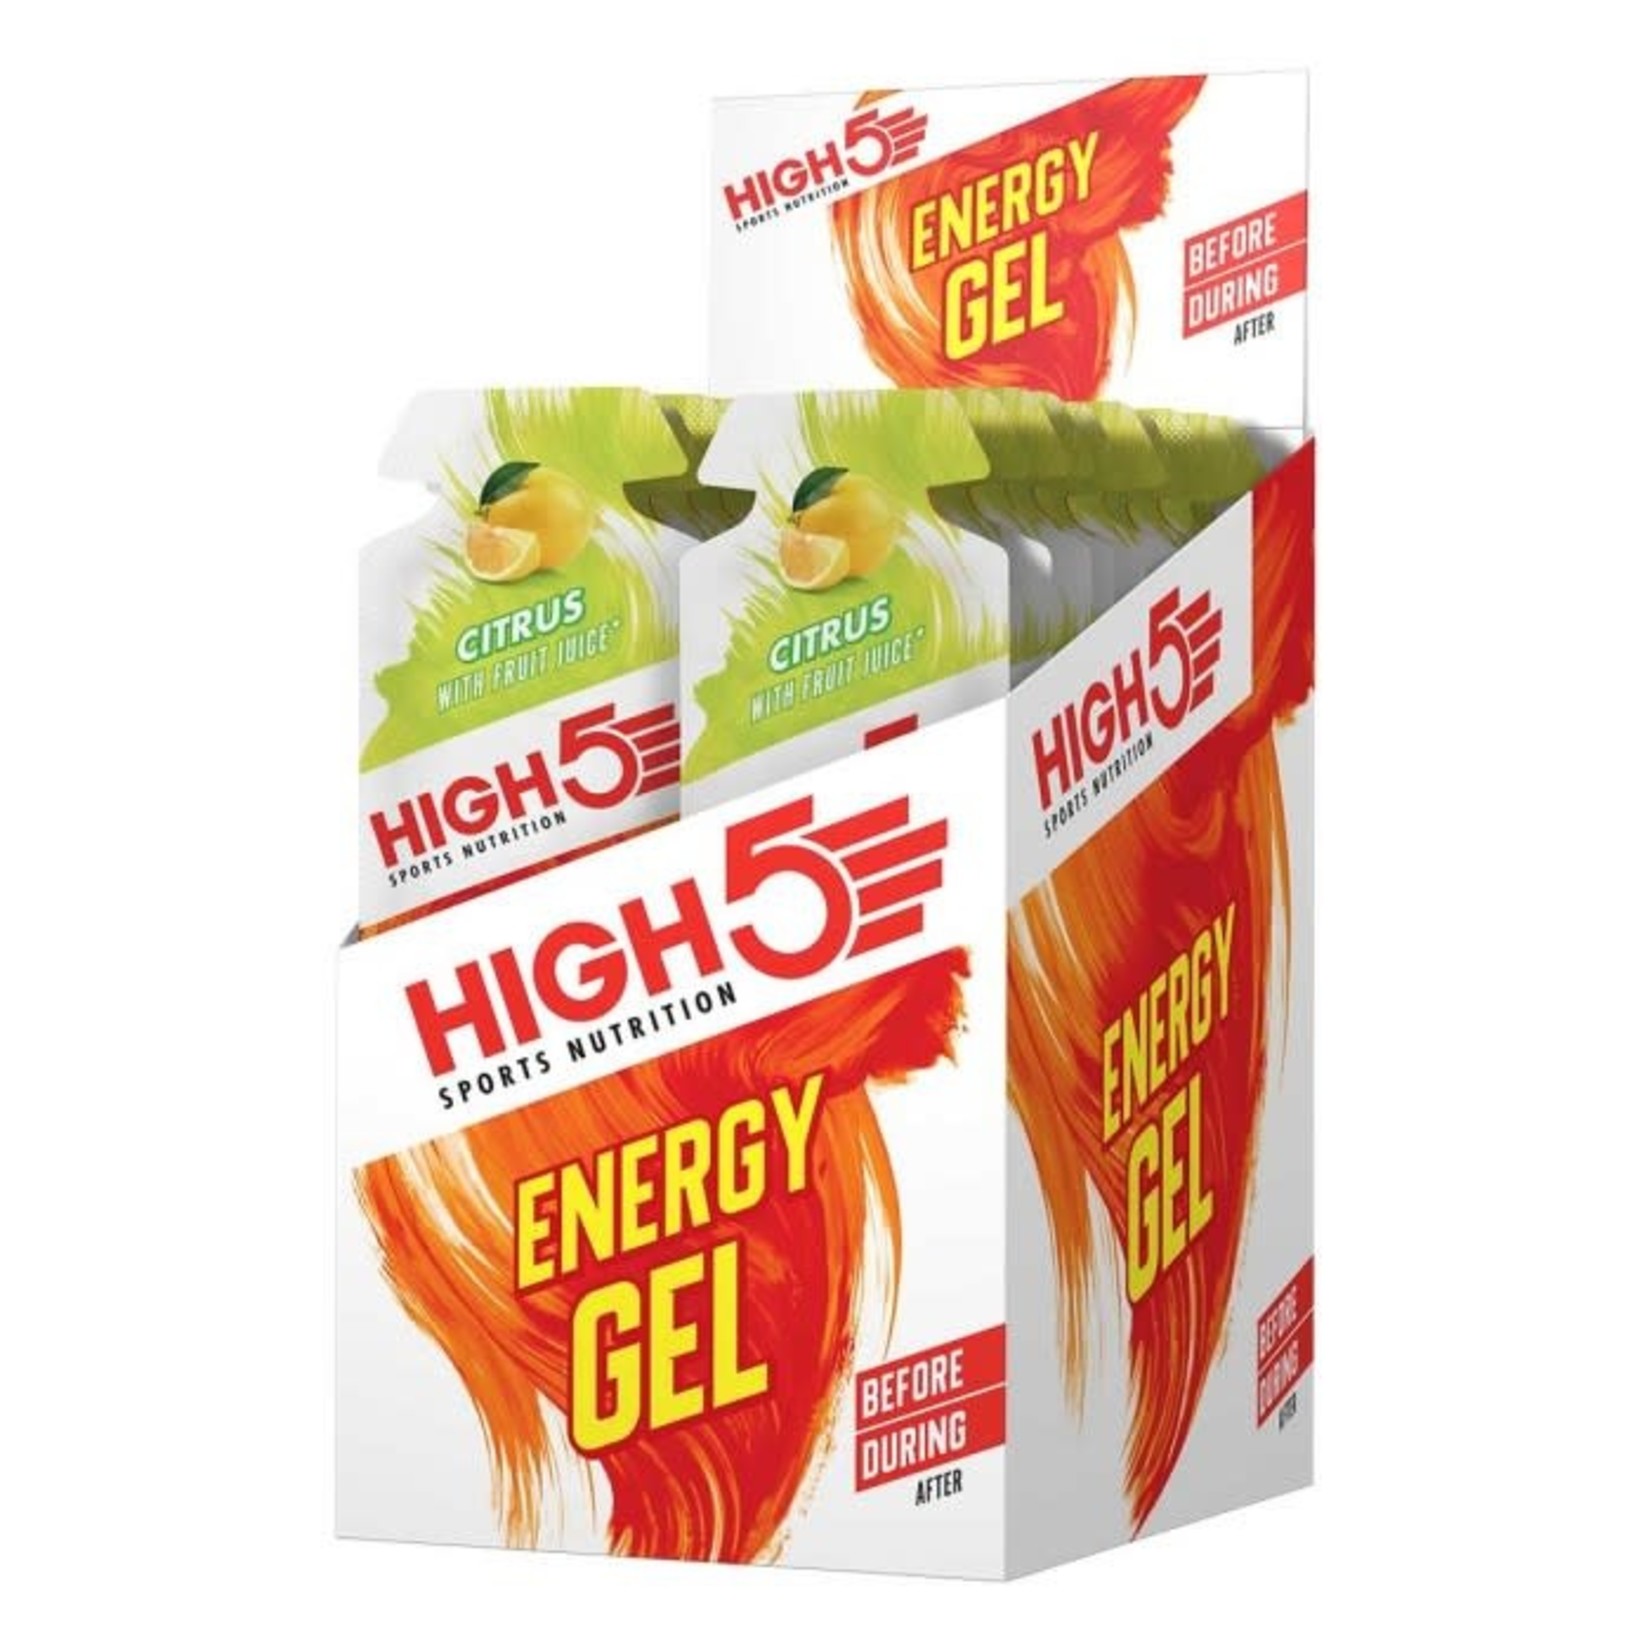 HIGH5 HIGH-5 ENERGY GEL